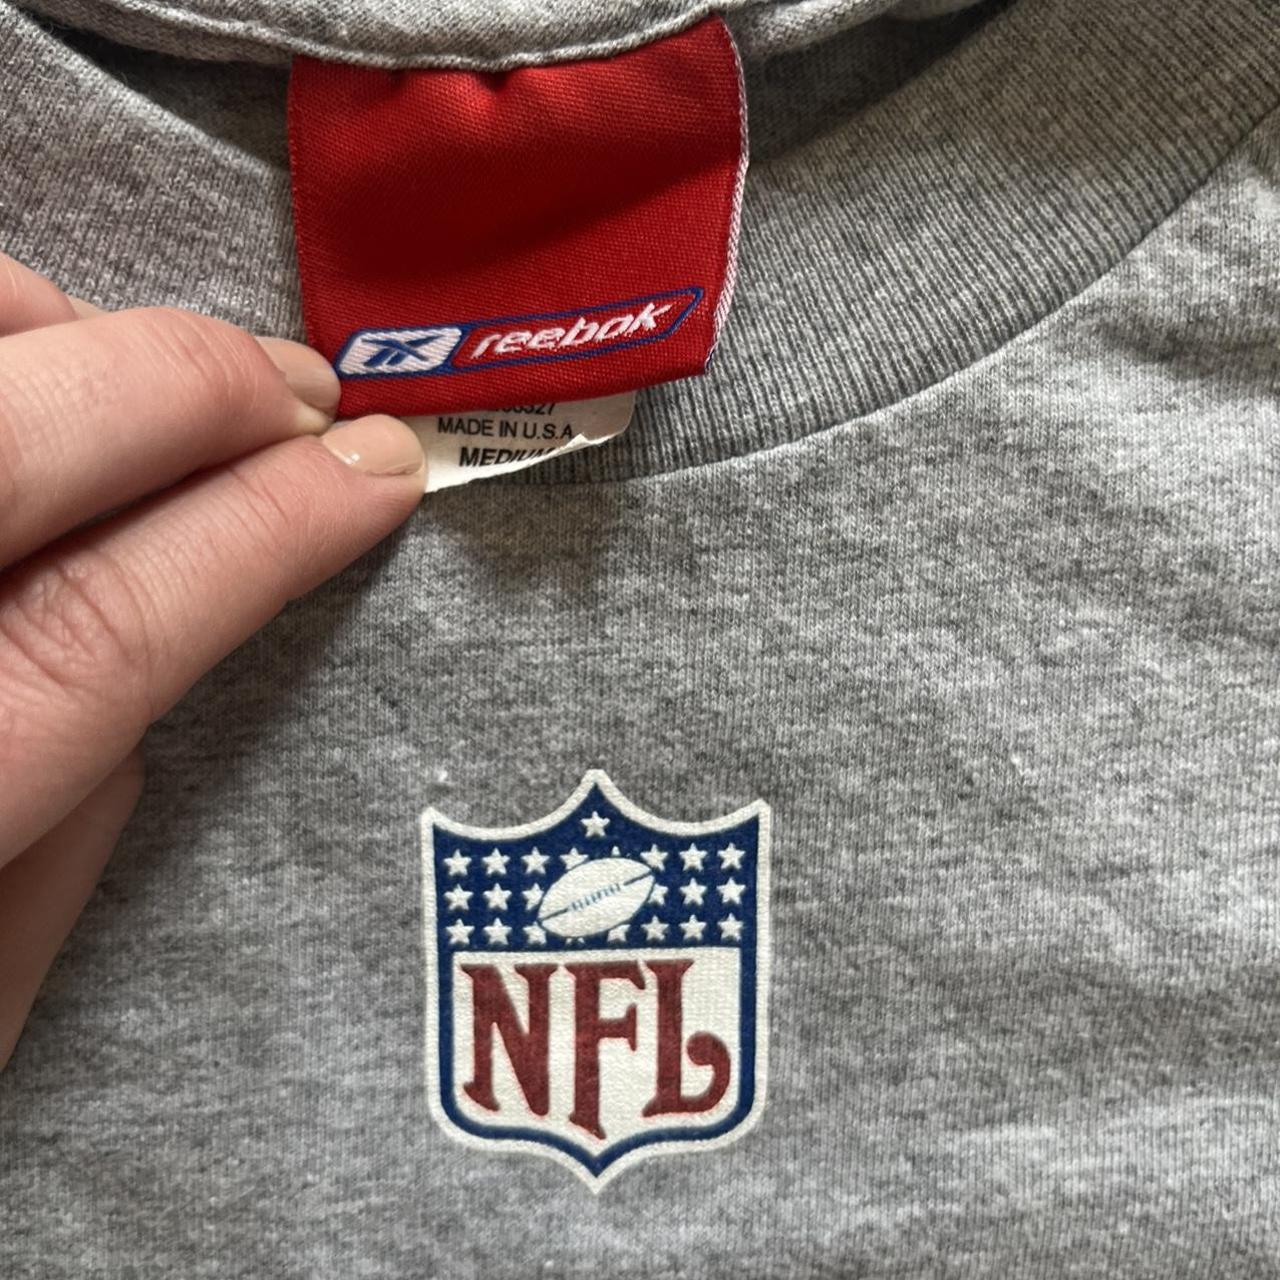 2002 Patriots Super Bowl Champions t shirt no... - Depop